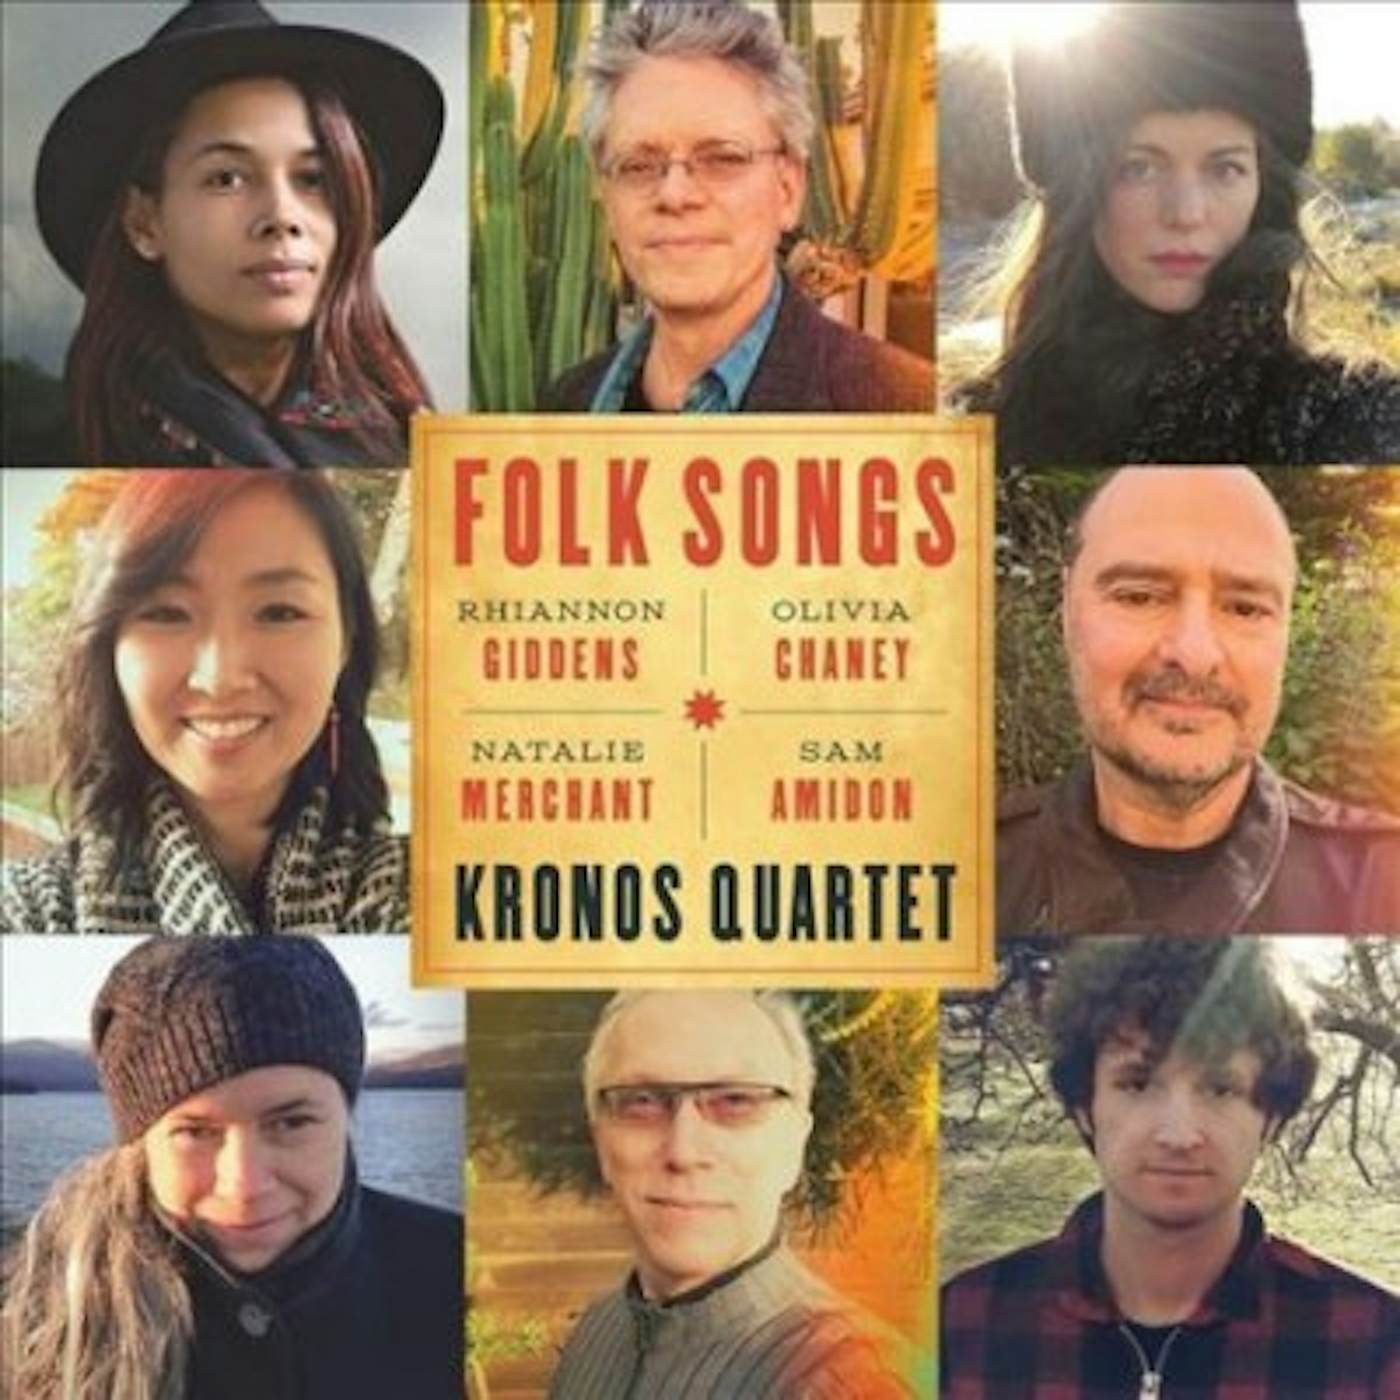 Kronos Quartet Folk Songs Vinyl Record